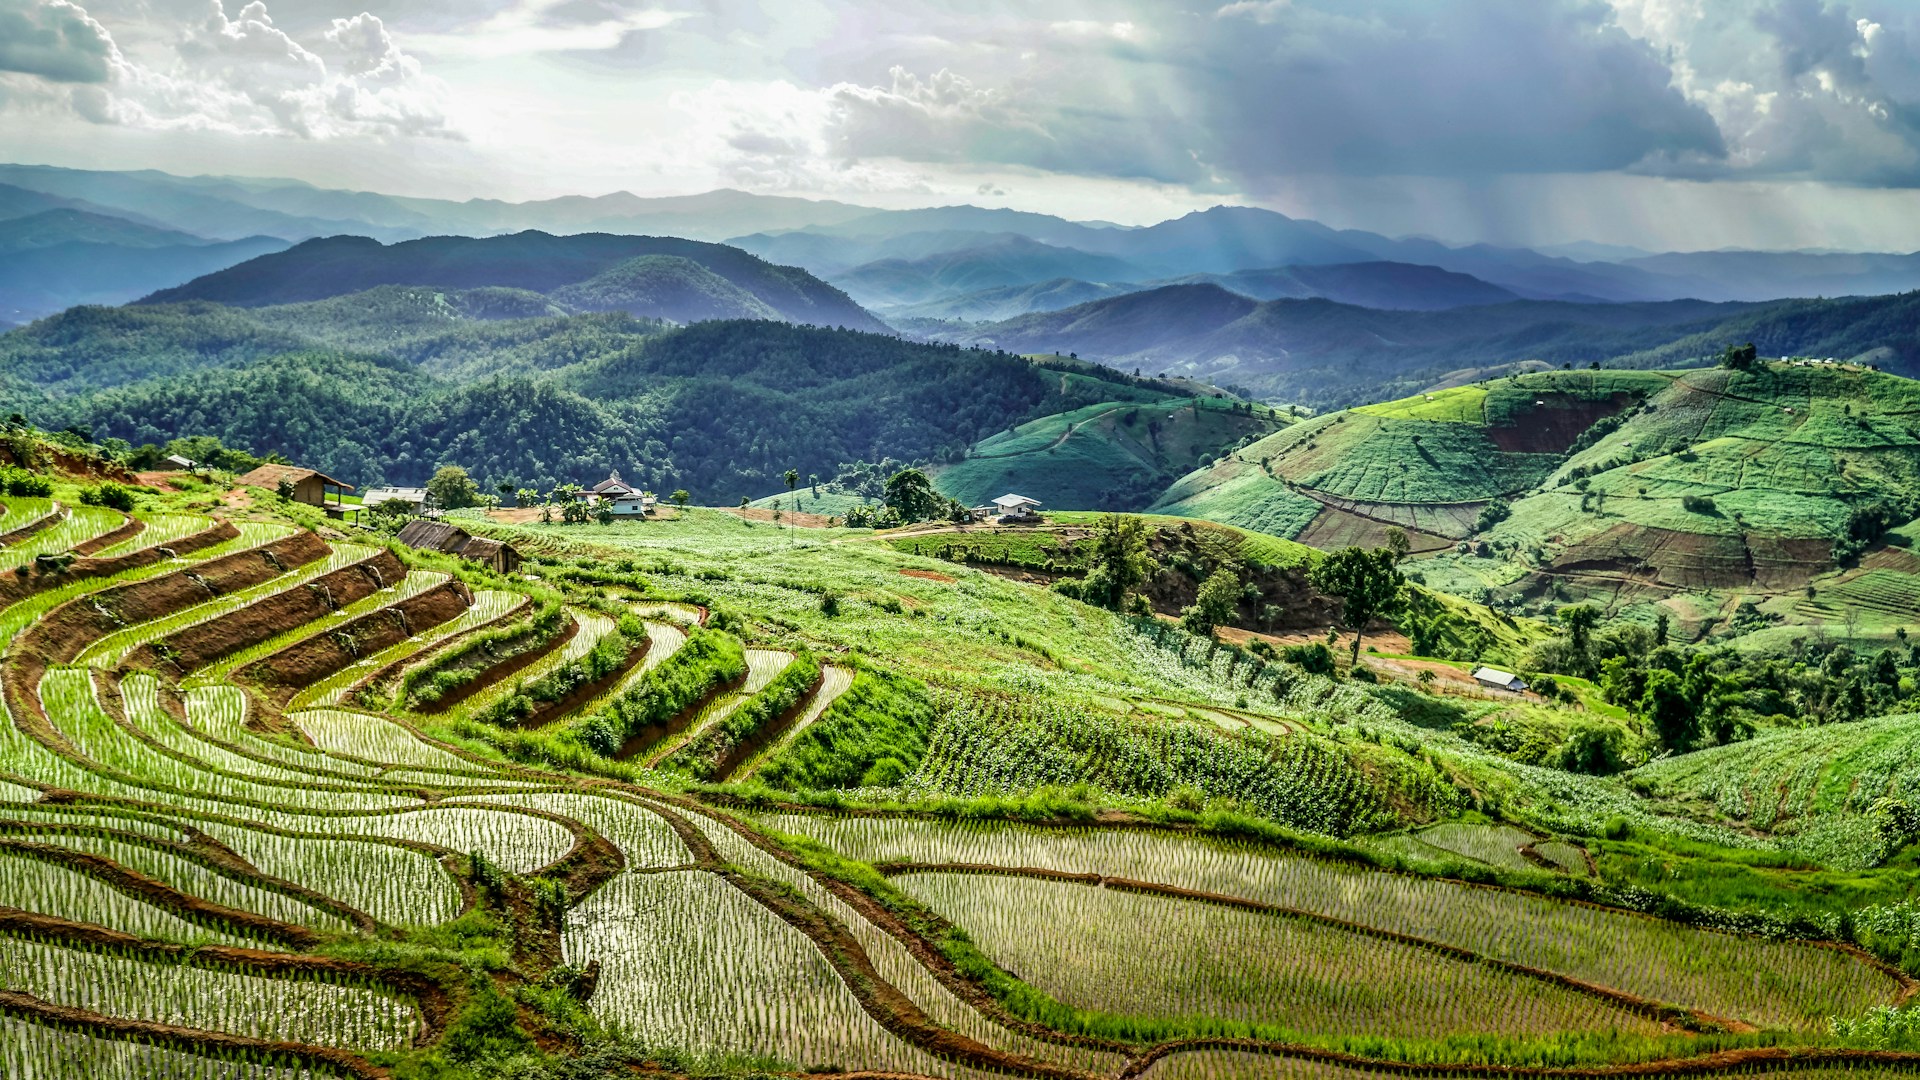 Hills of fields in Thailand